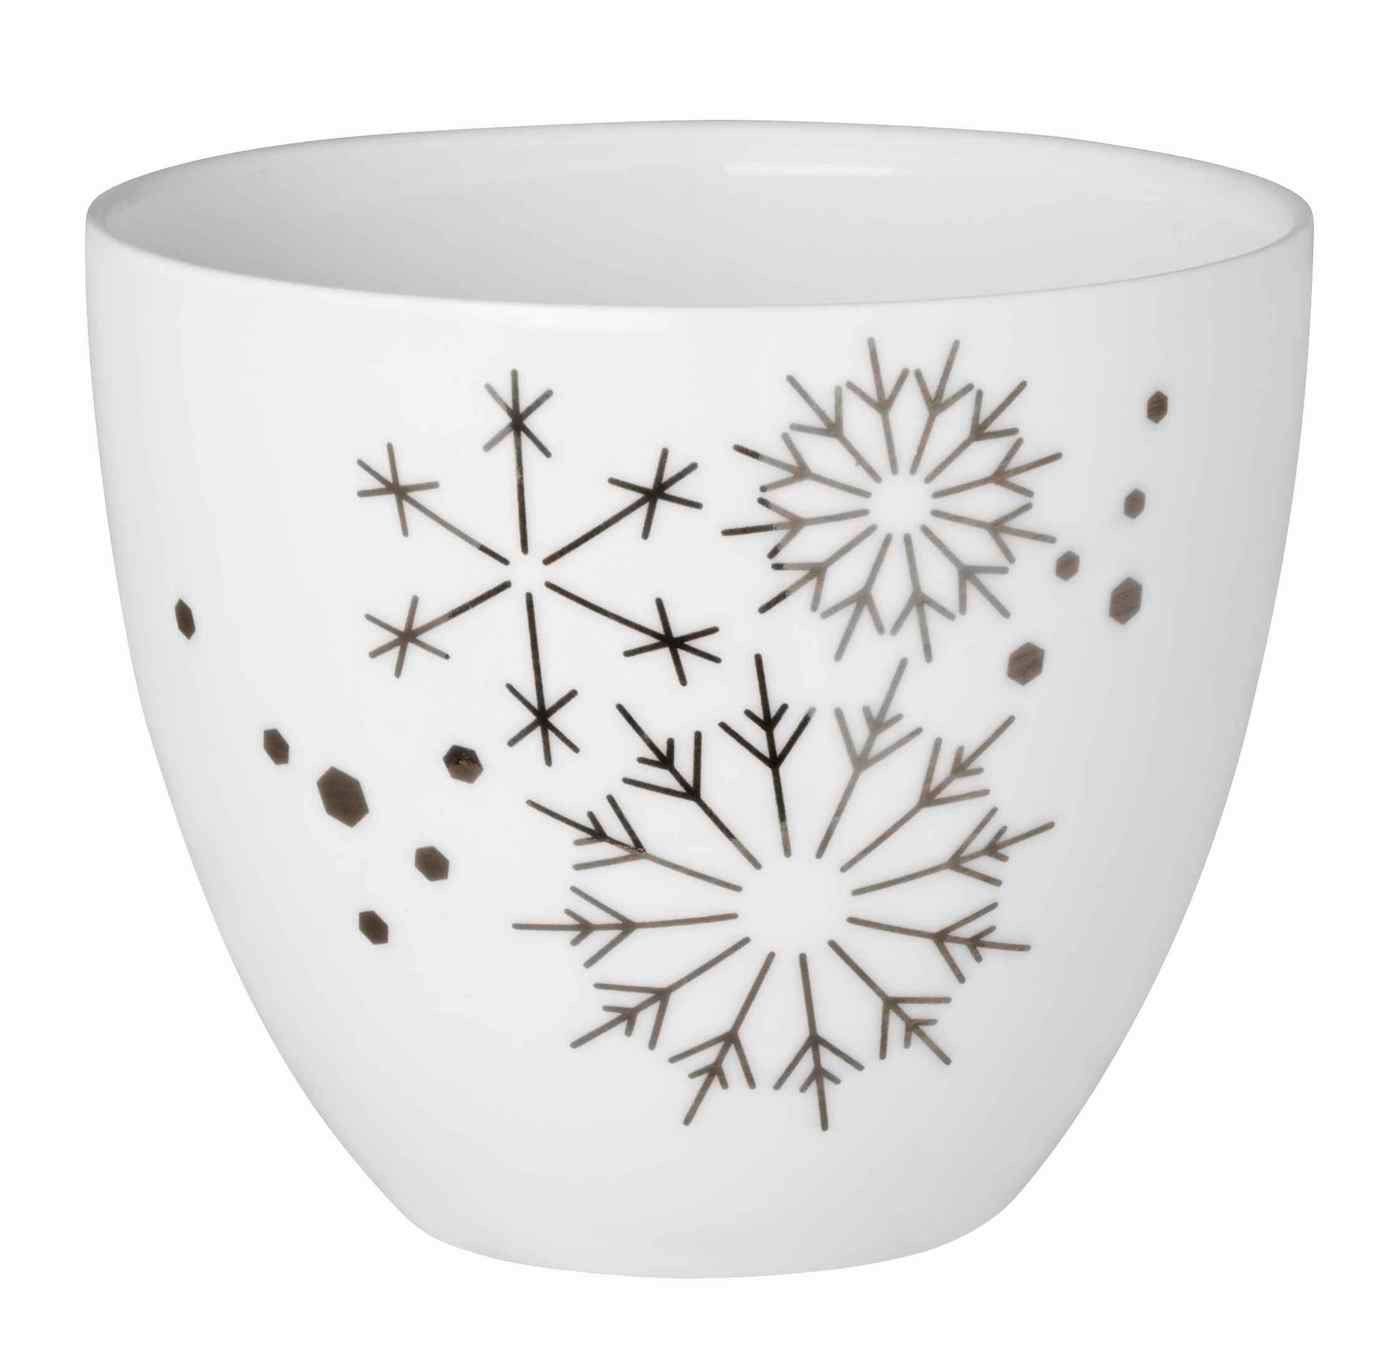 Räder Design Teelichthalter Porzellanlicht Schneeflocken Silber Porzellan weiß silber H6,5cm | Teelichthalter